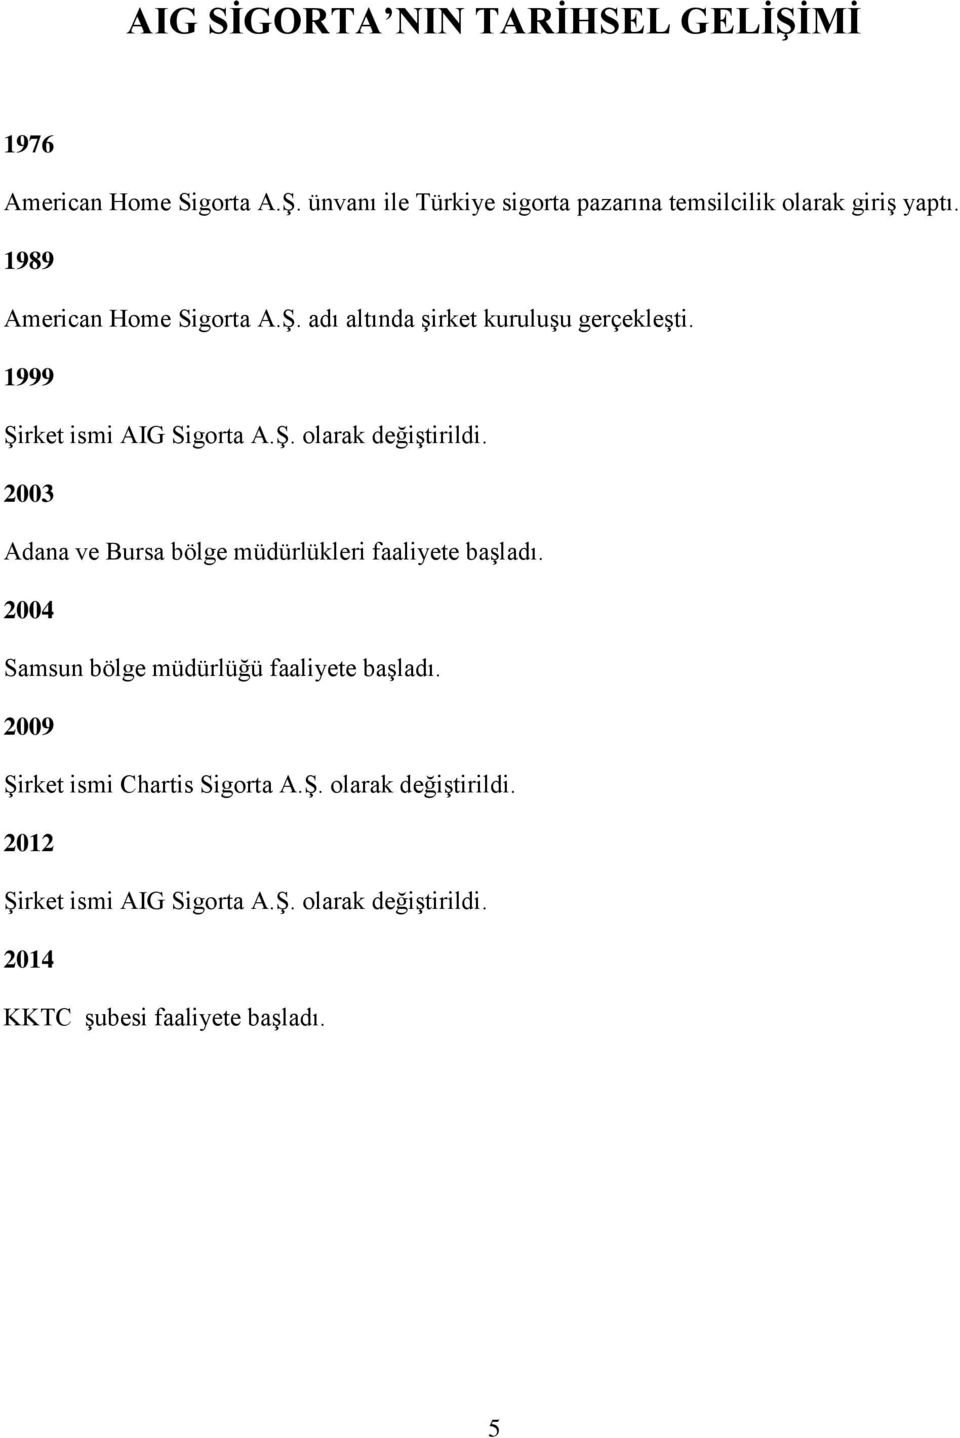 2003 Adana ve Bursa bölge müdürlükleri faaliyete başladı. 2004 Samsun bölge müdürlüğü faaliyete başladı.